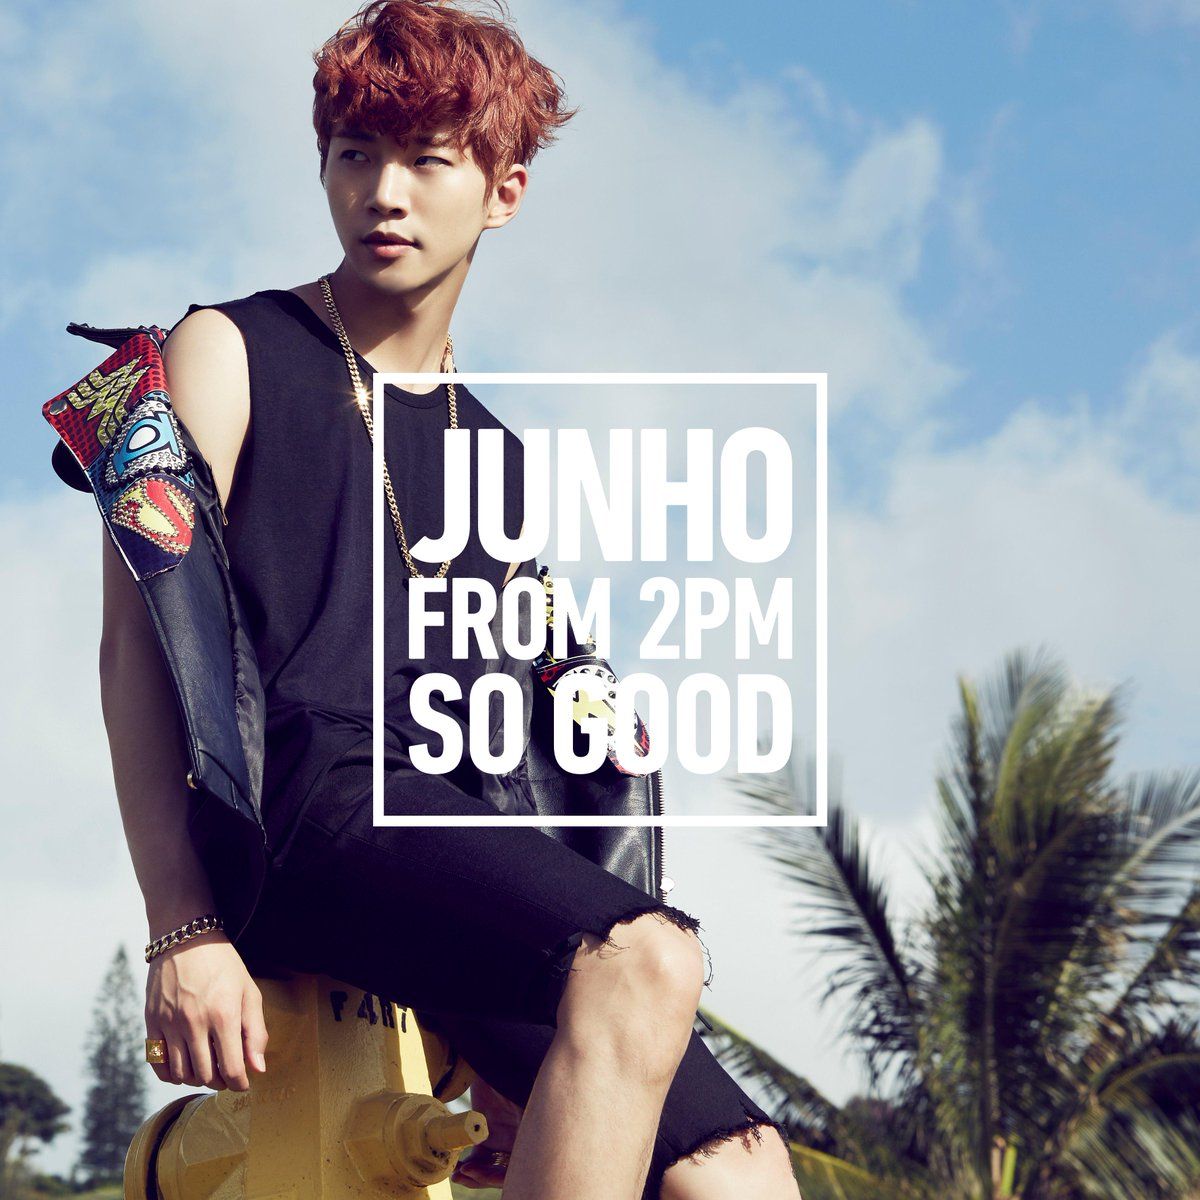 파일:JUNHO (From 2PM) SO GOOD.jpg